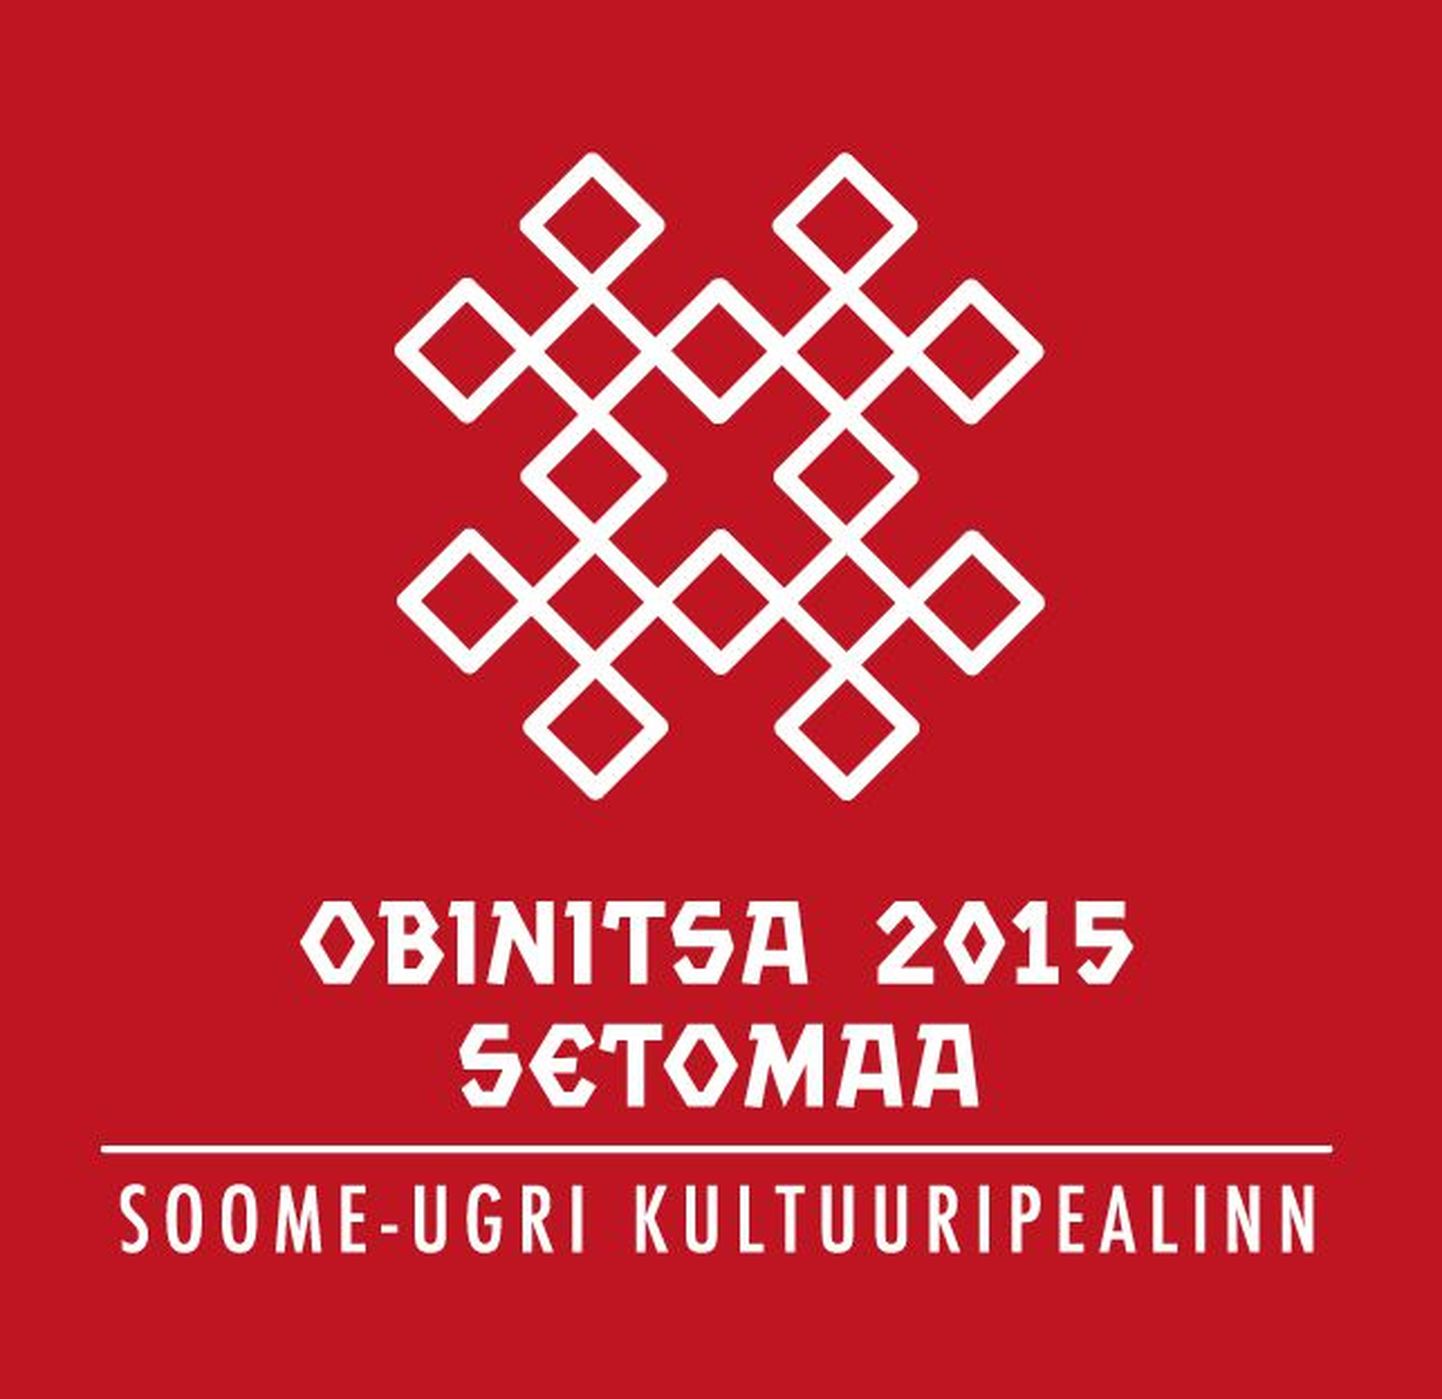 Soome-ugri kultuuripealinn 2015 - Setomaa, Obinitsa.